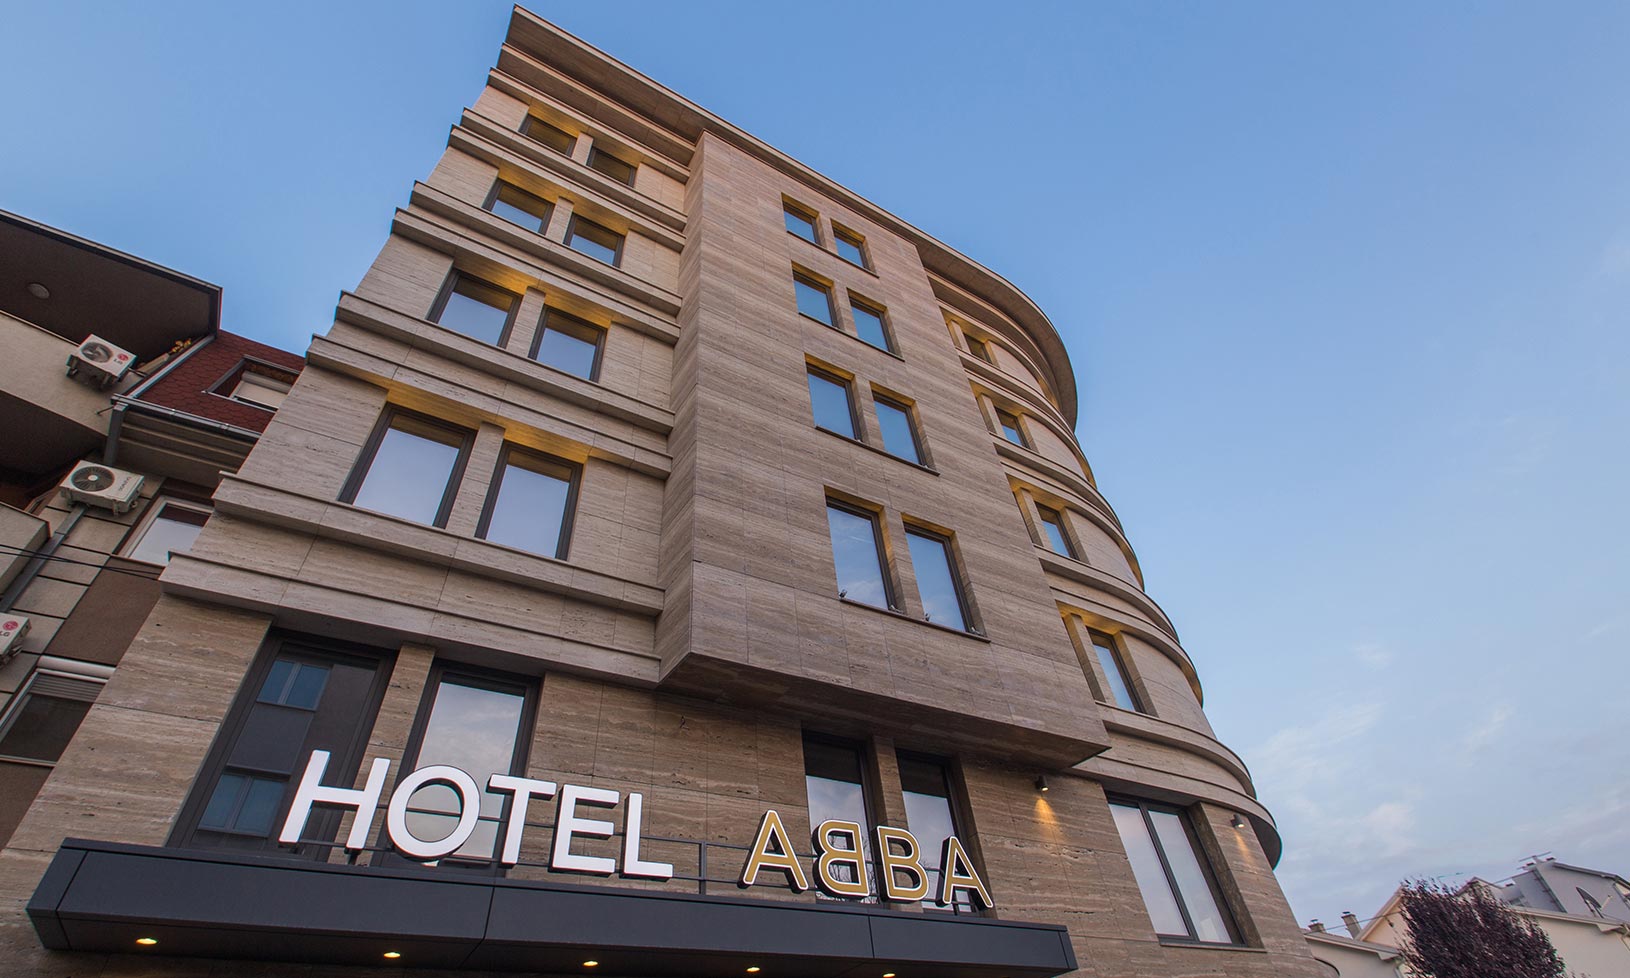 Hotel Abba, Beograd